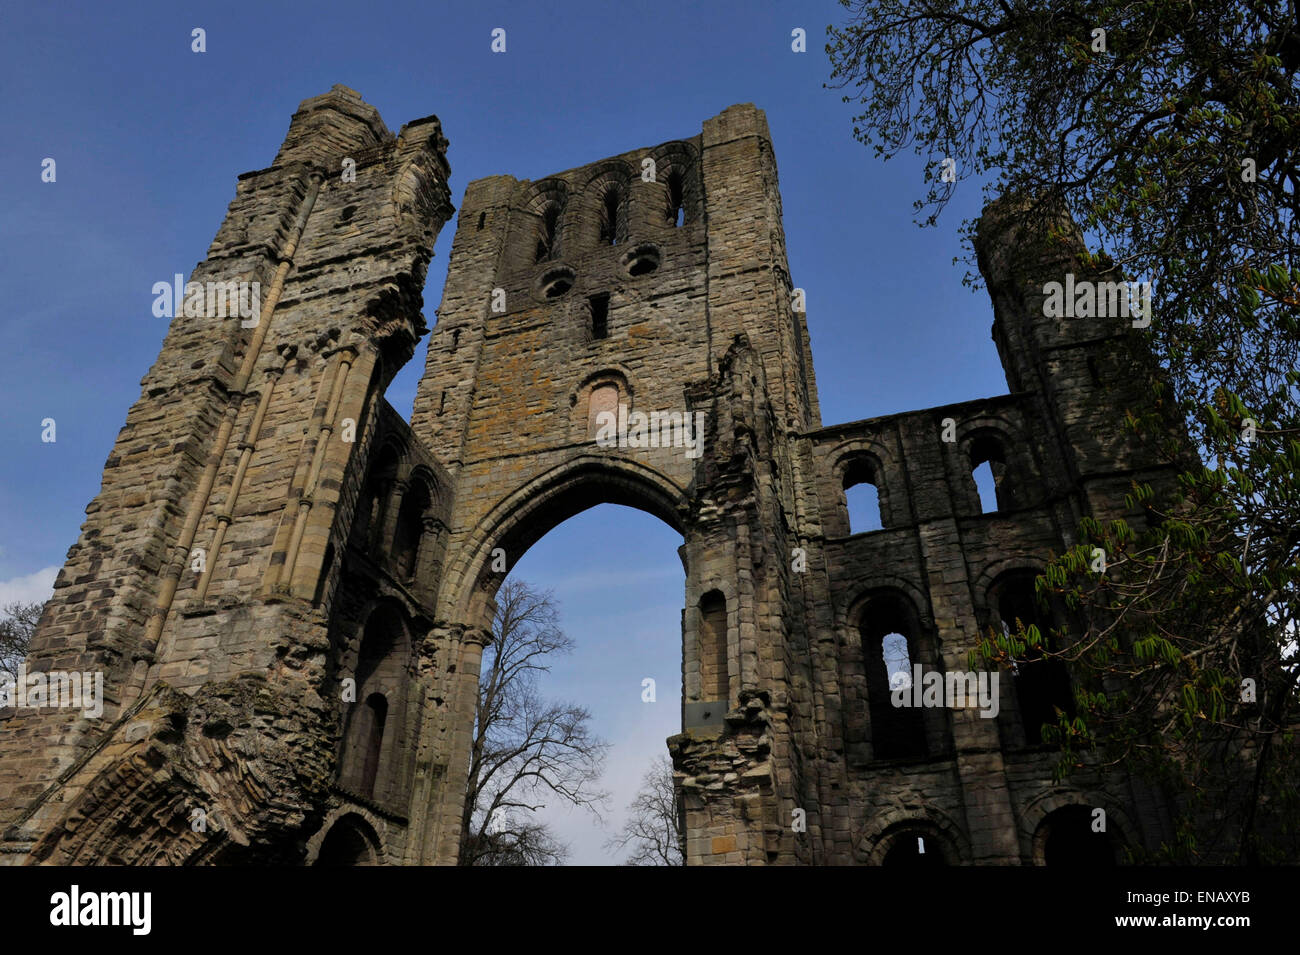 Kelso Abbey; Scottish Borders; xii secolo; David I di Scozia; attrazione turistica; Tironensians. Foto Stock